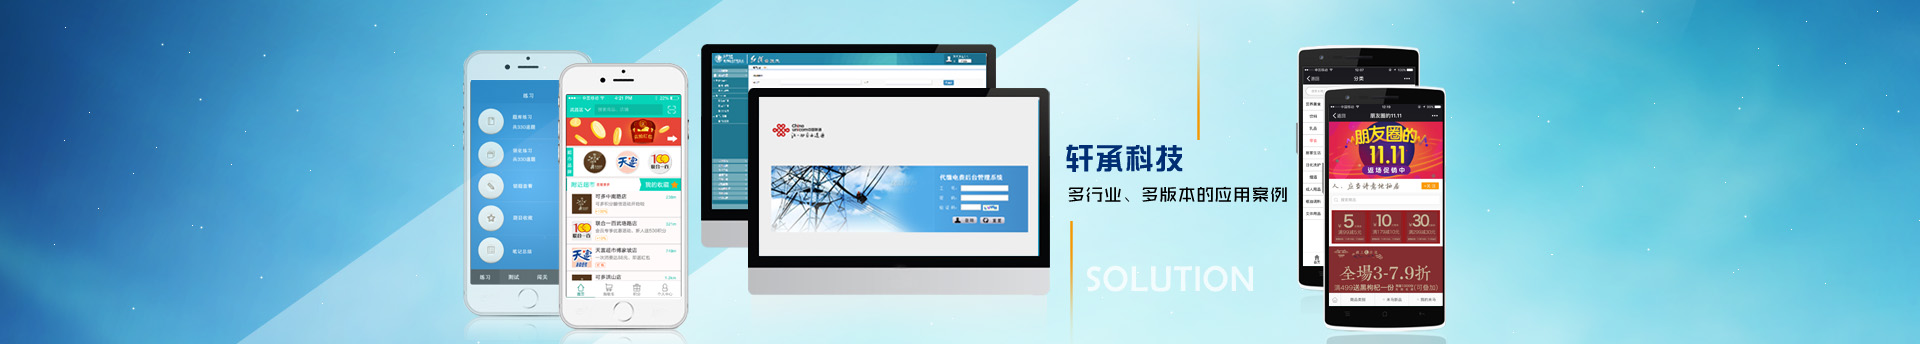 武汉软件开发-武汉网站建设-武汉APP开发-武汉微信小程序开发-武汉数据可视化开发—服务优势